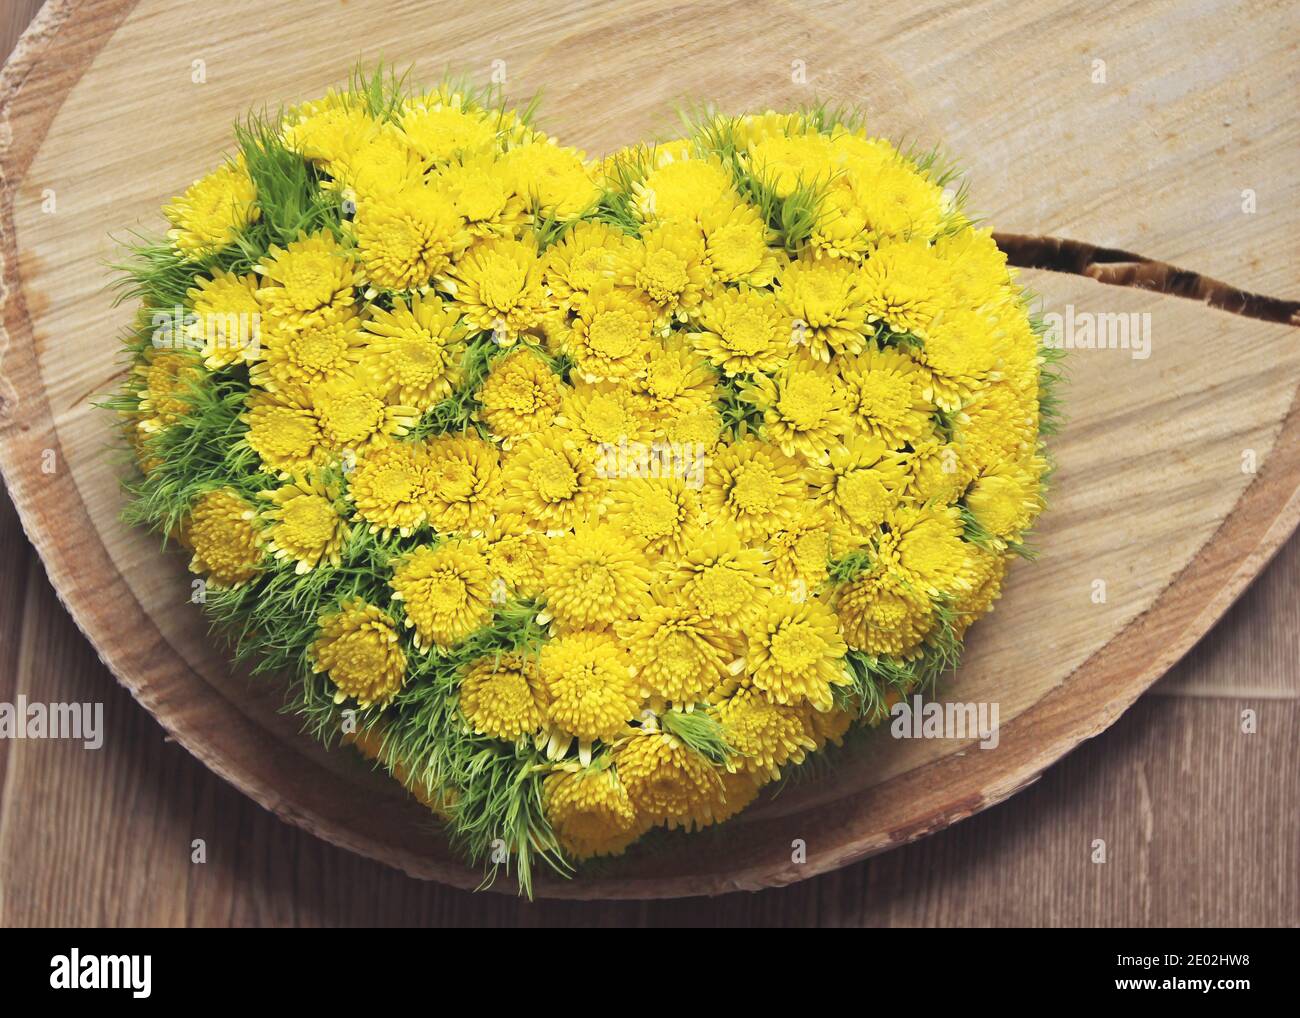 Coeur de fleur jaune sur tranche de bois. puma jaune chrysanthème. Vue de dessus Banque D'Images